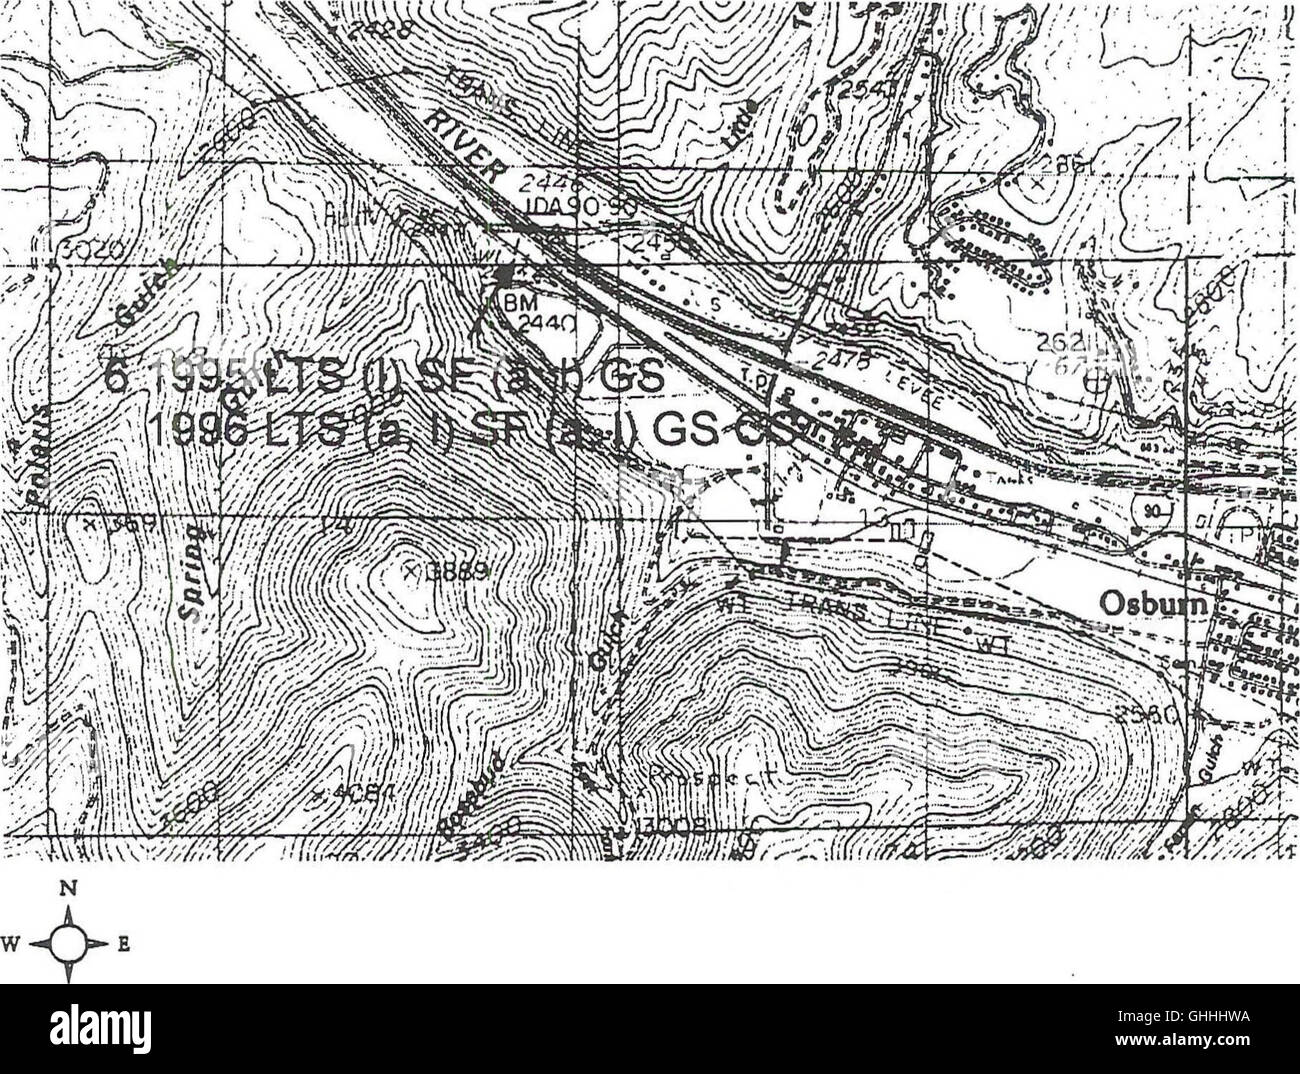 Amphibians of the Coeur d'Alene basin - a survey of Bureau of Land Management lands (1998) Stock Photo